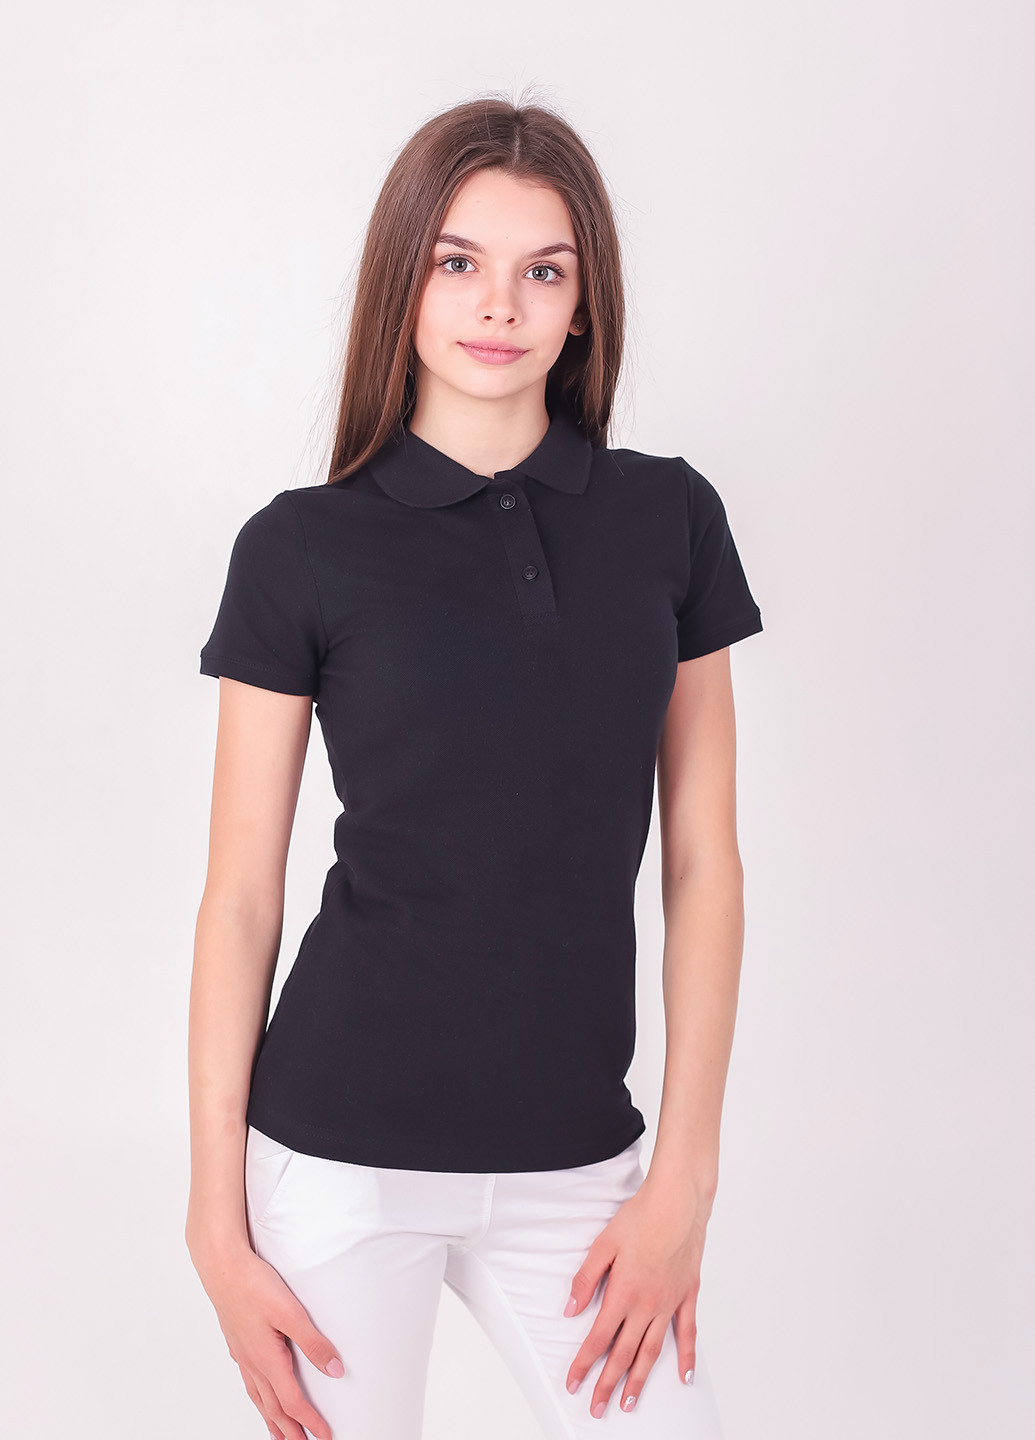 Черная женская футболка-футболка поло жіноча TvoePolo однотонная